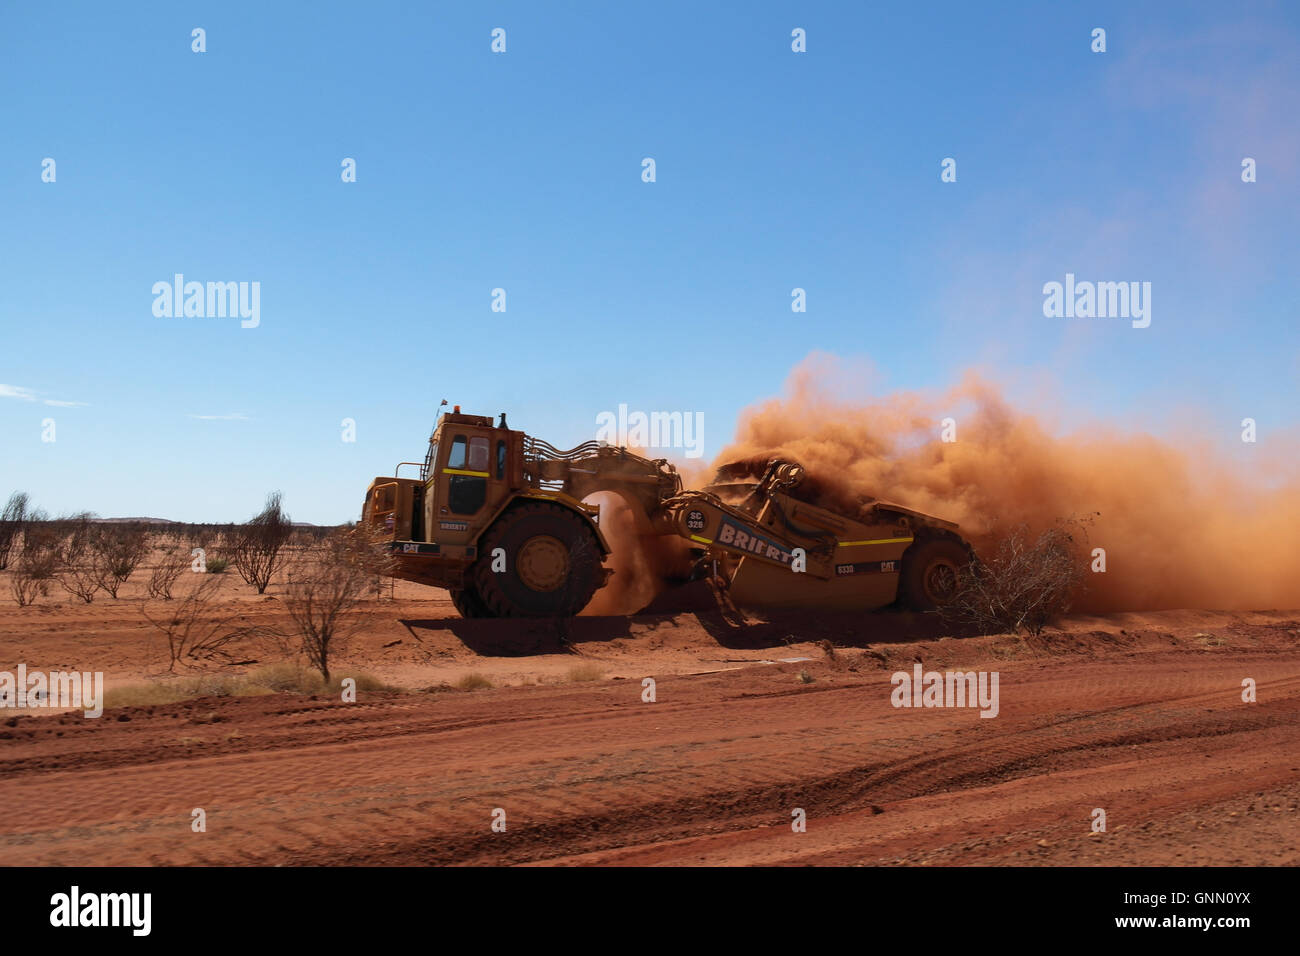 Les constructeurs de routes avec de lourdes machines dans l'Outback australien - Australie Banque D'Images